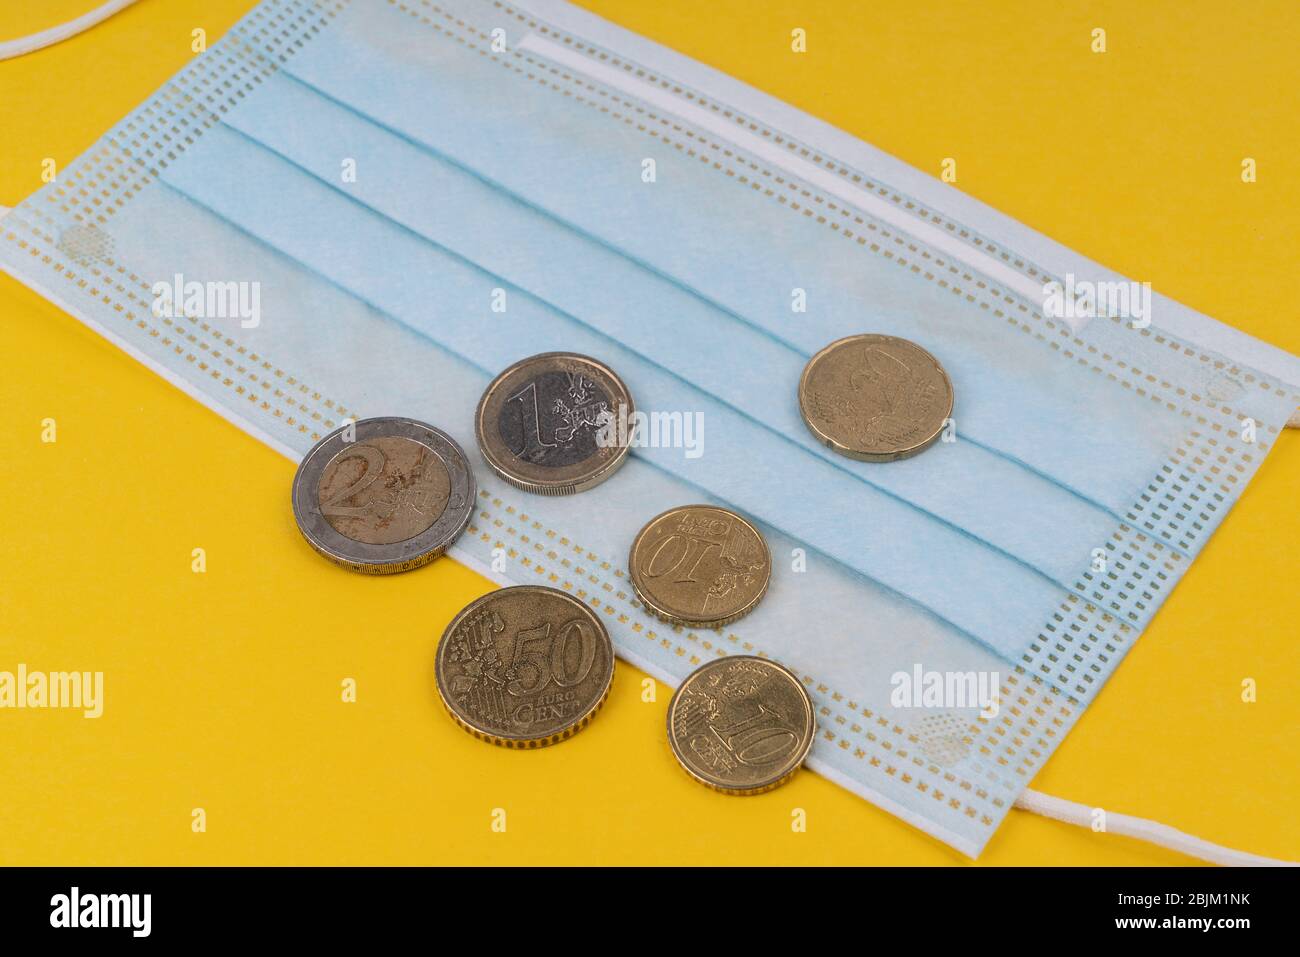 Una maschera chirurgica e alcune monete in euro. Foto Stock